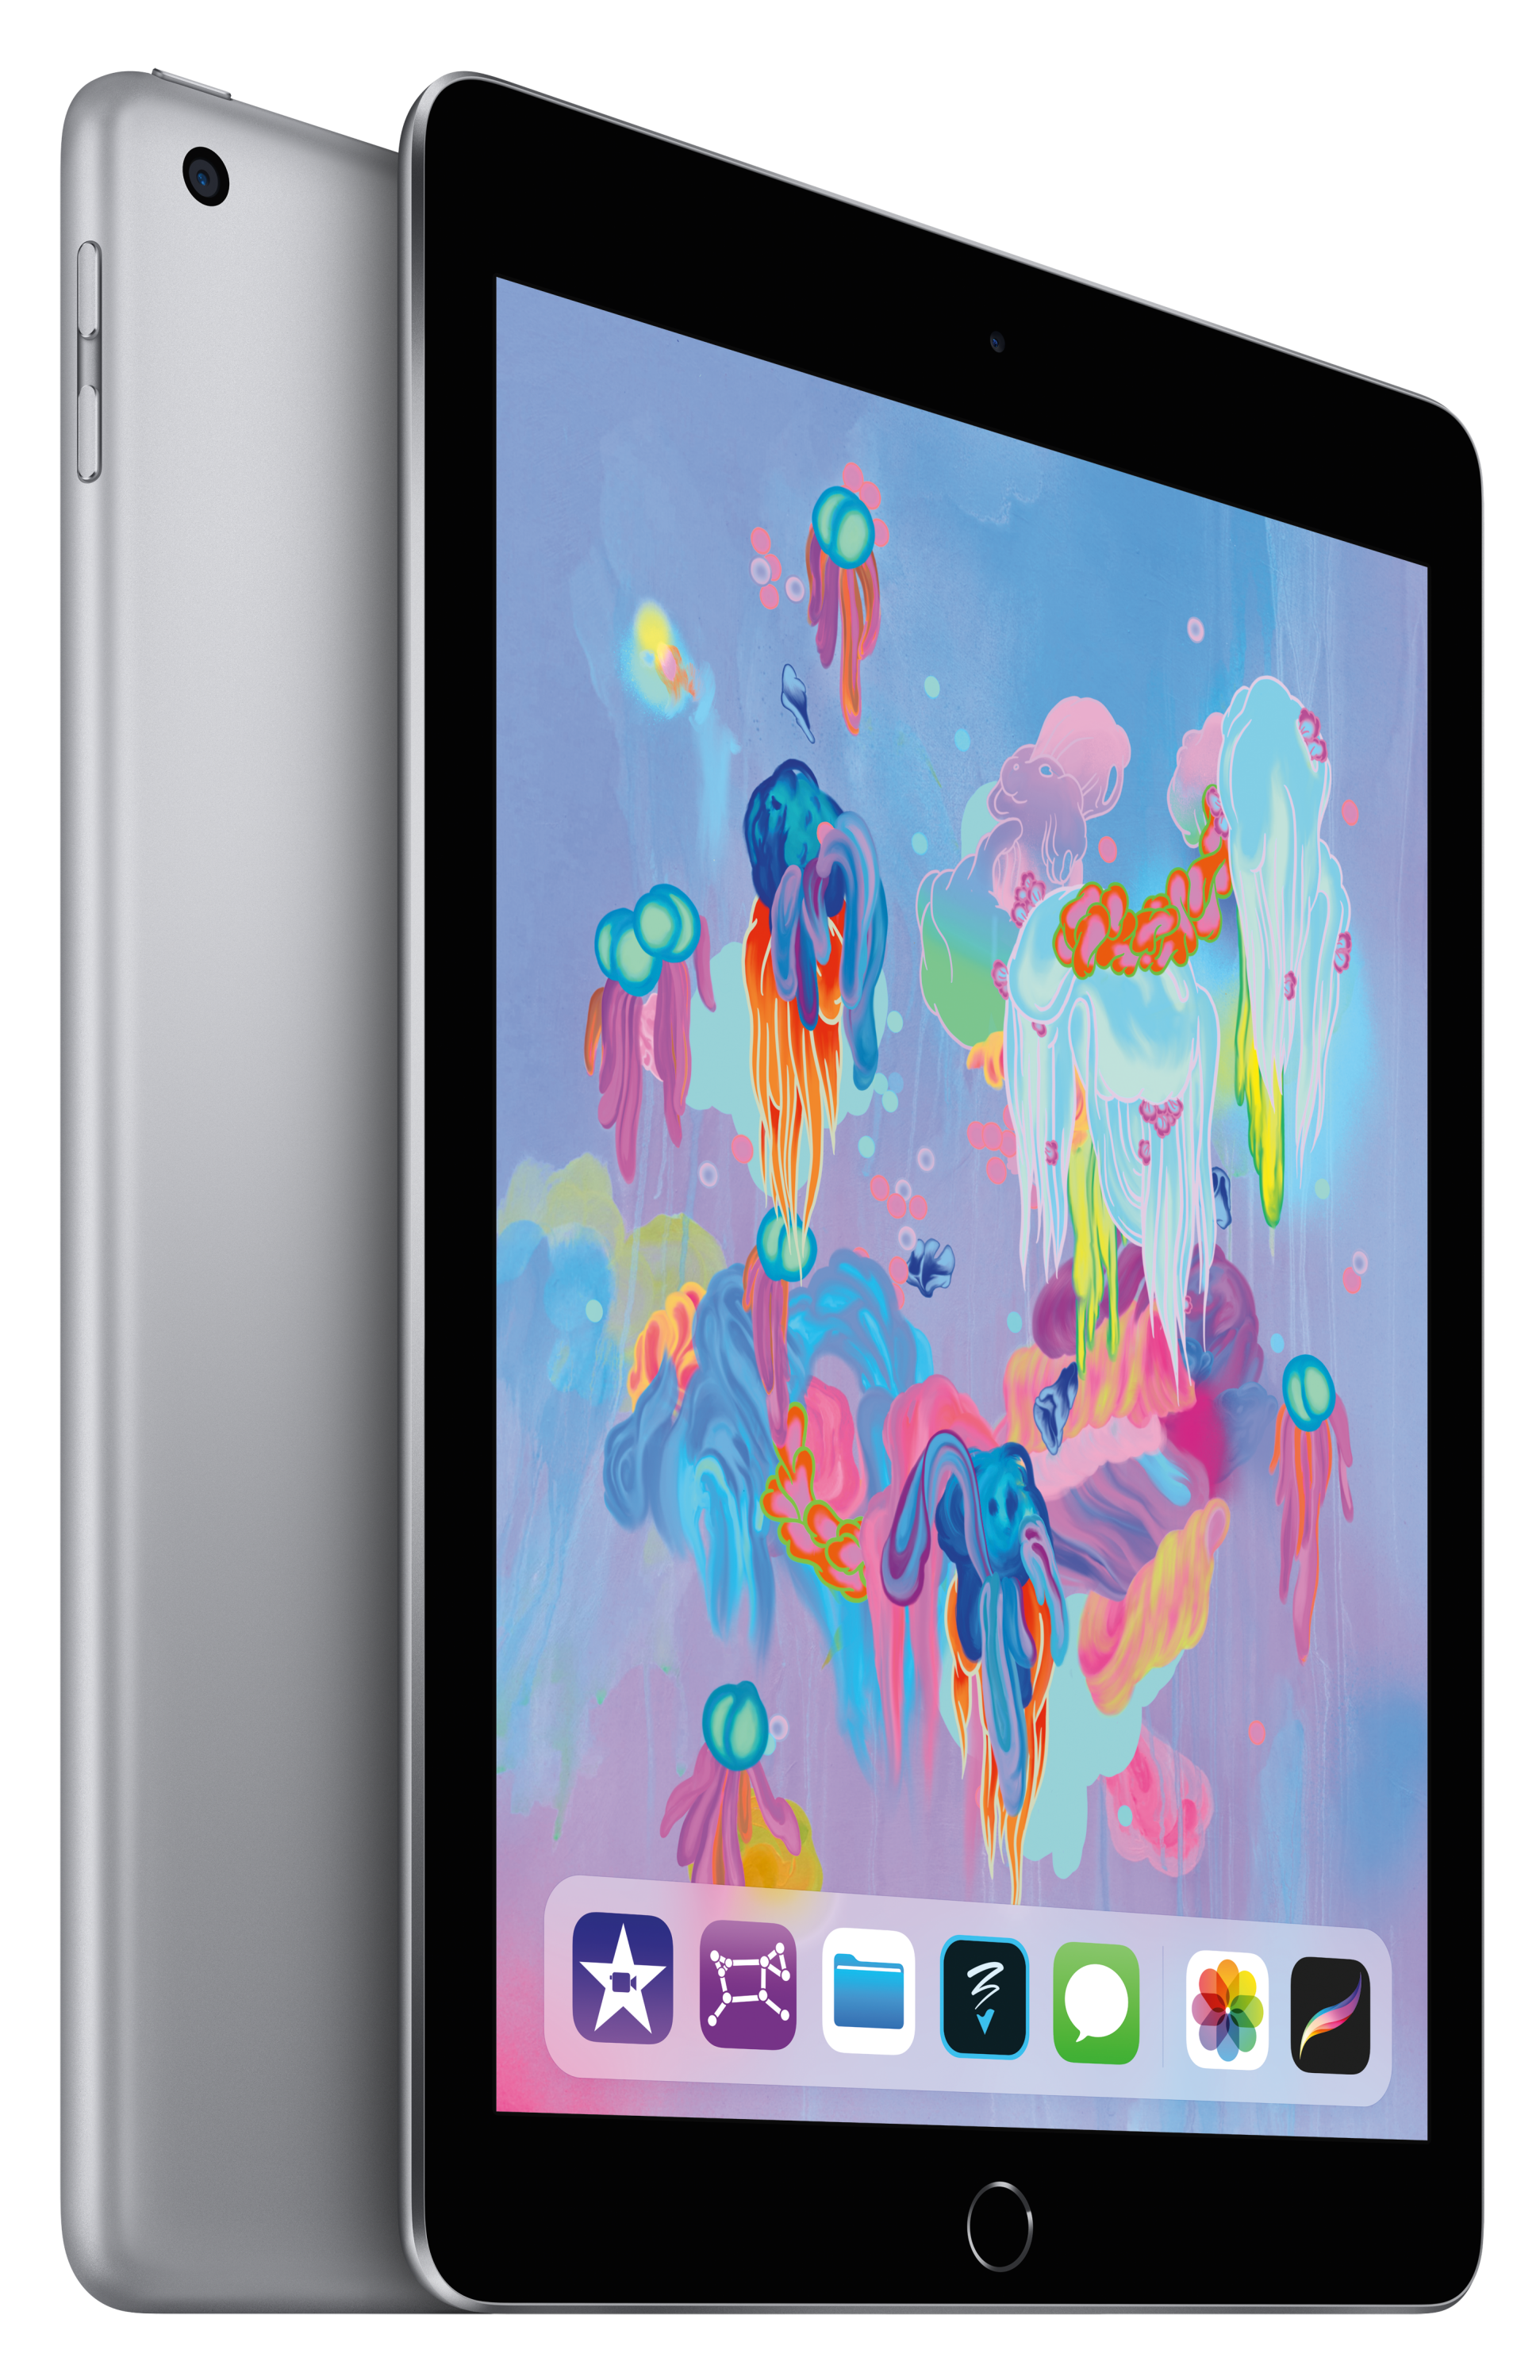 Apple iPad Wi-Fi 32GB - Space Gray | Sweetwater